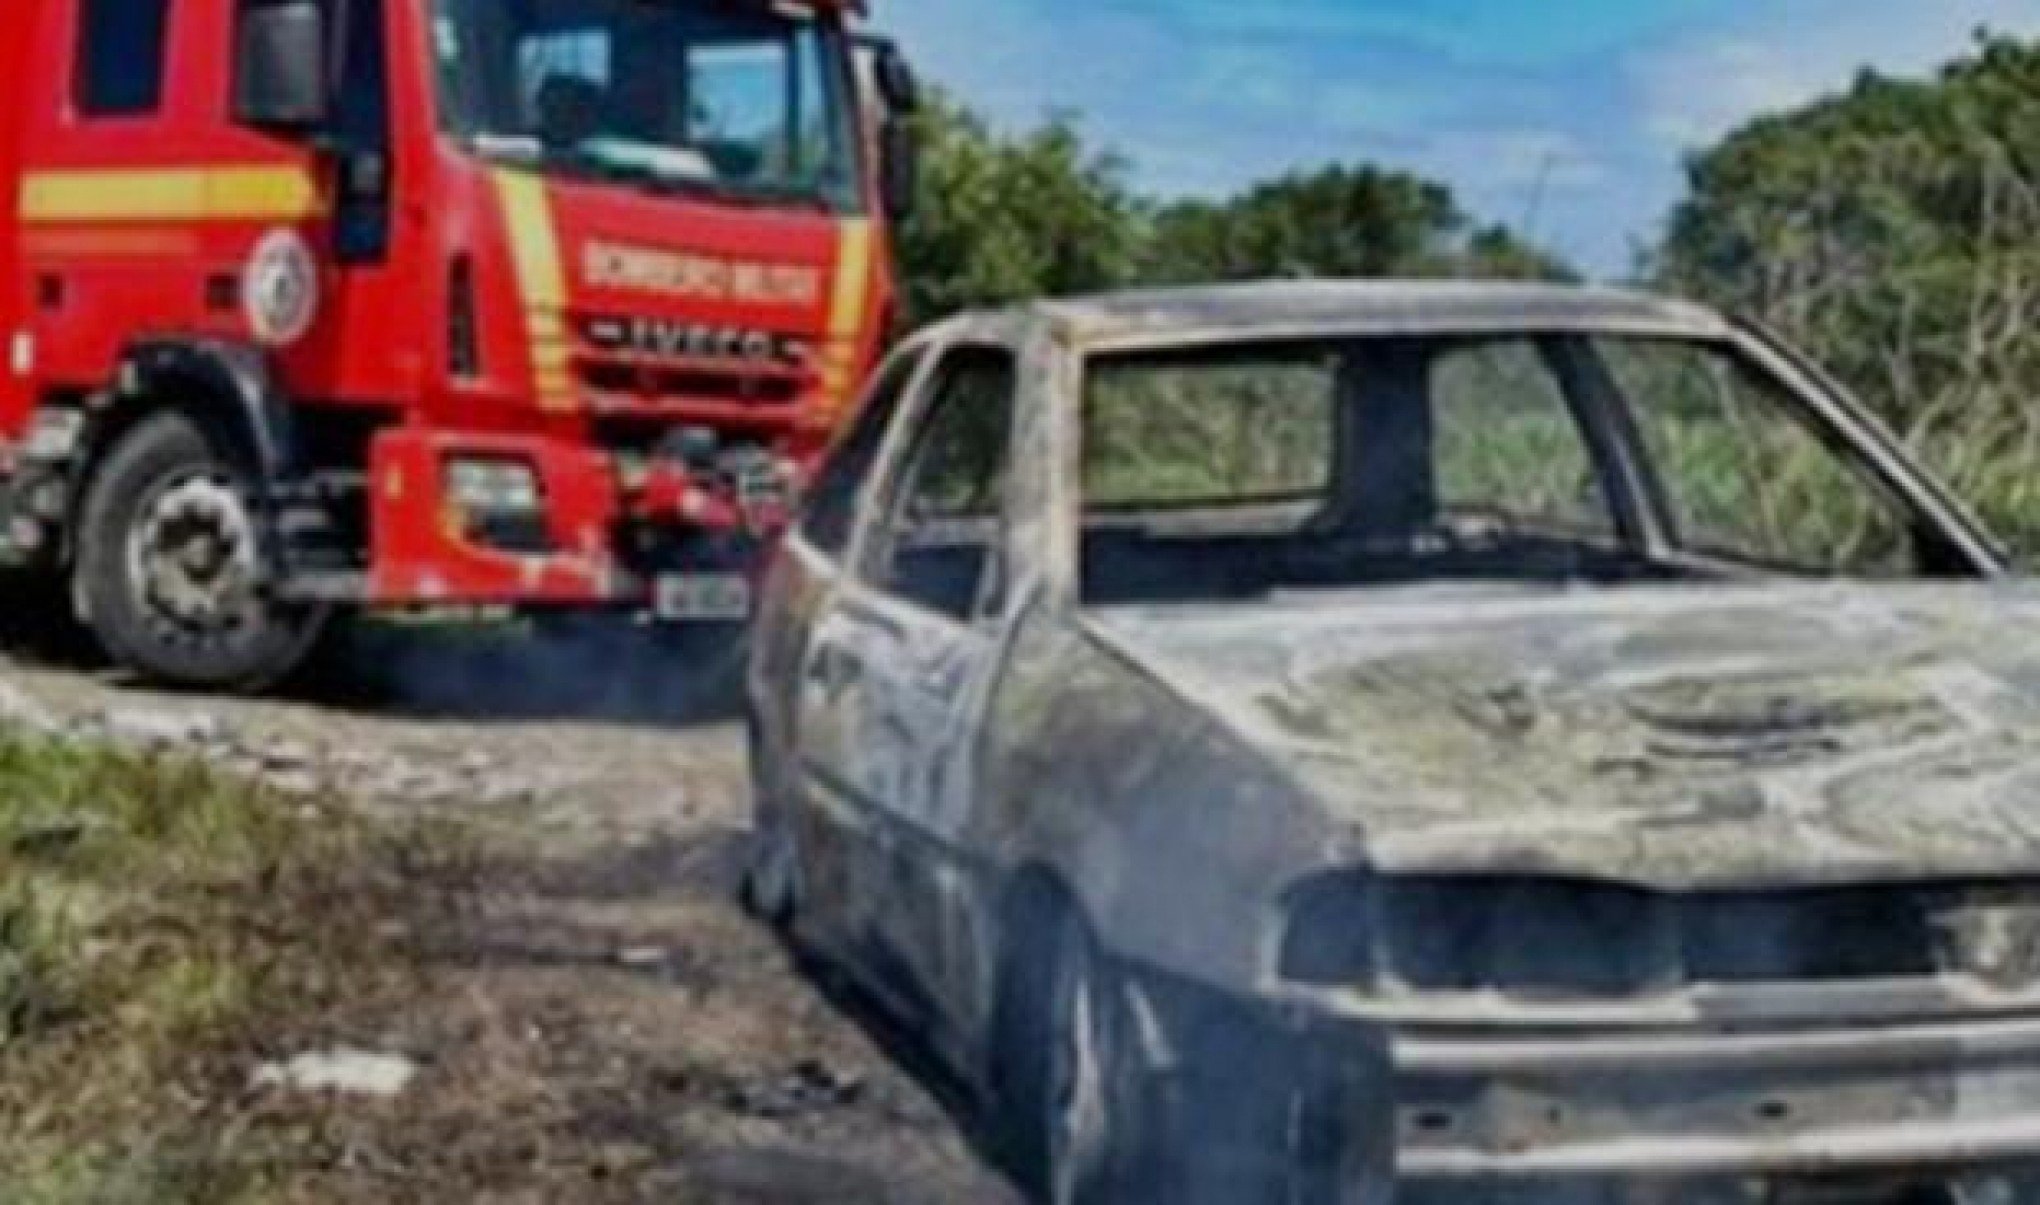 CORPO CARBONIZADO: Homem é encontrado dentro de carro queimado após vizinhos ouvirem tiros